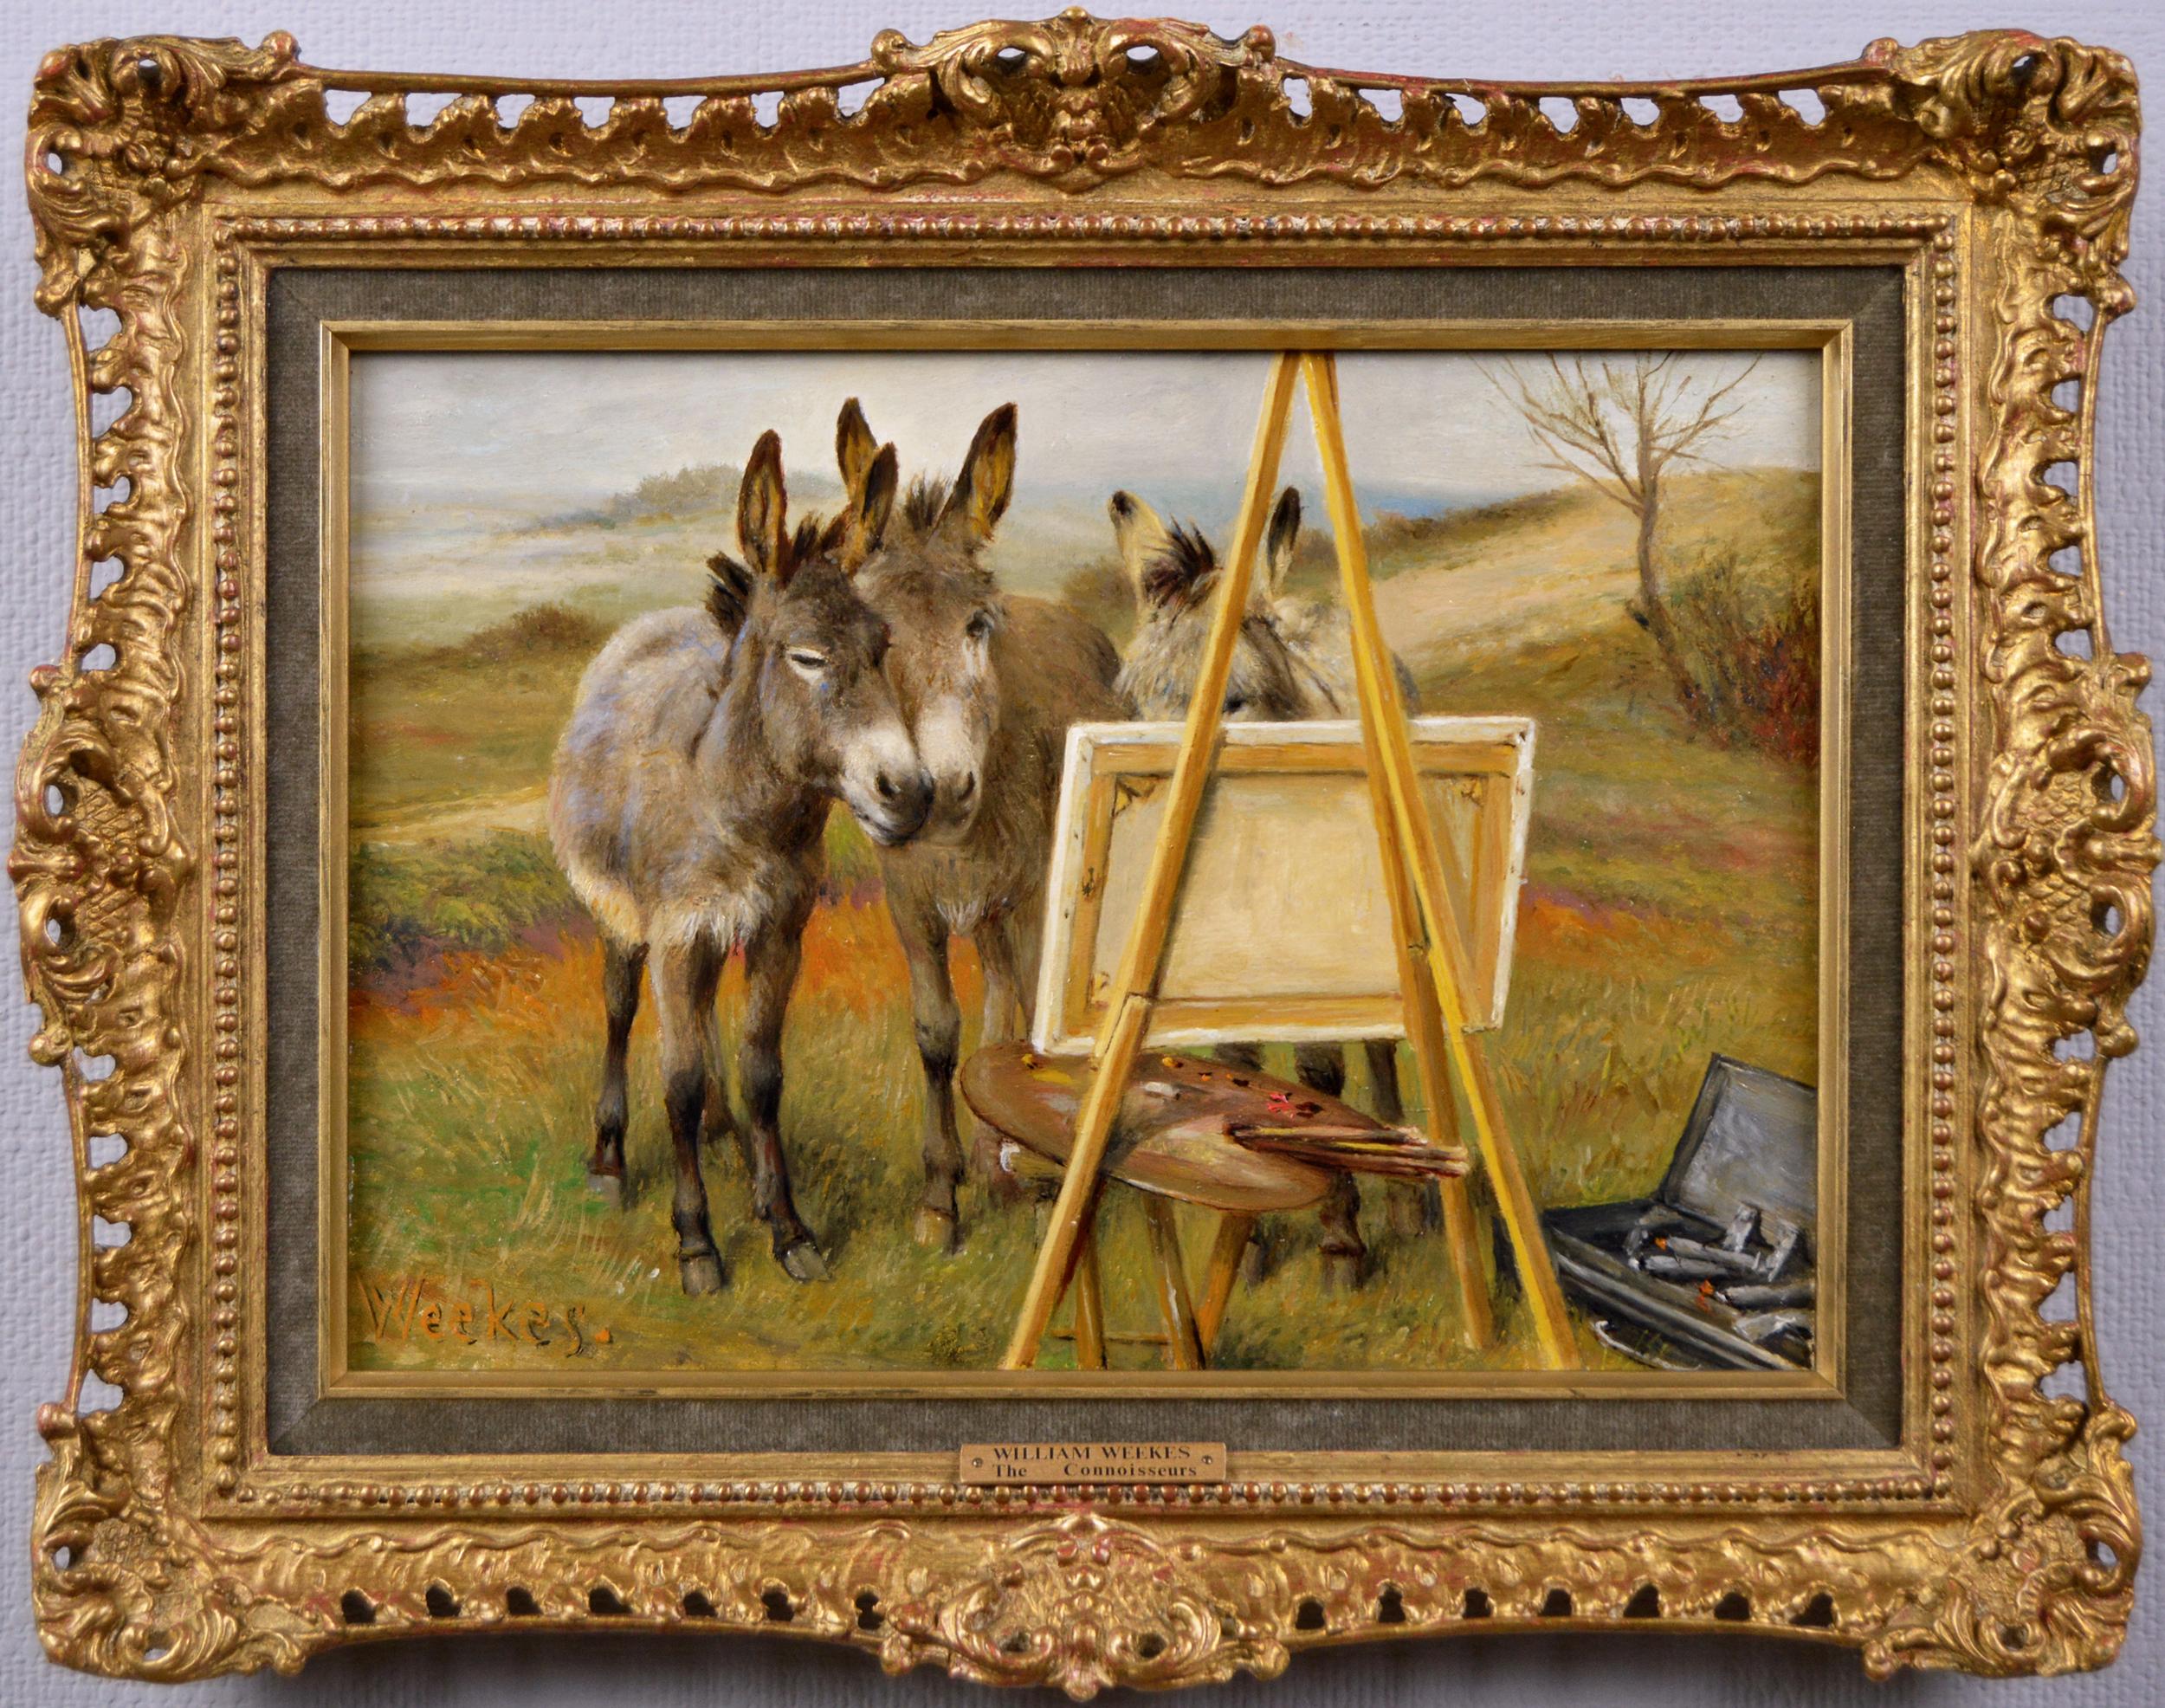 Herbert William Weekes Animal Painting - 19th Century genre oil painting of donkeys 